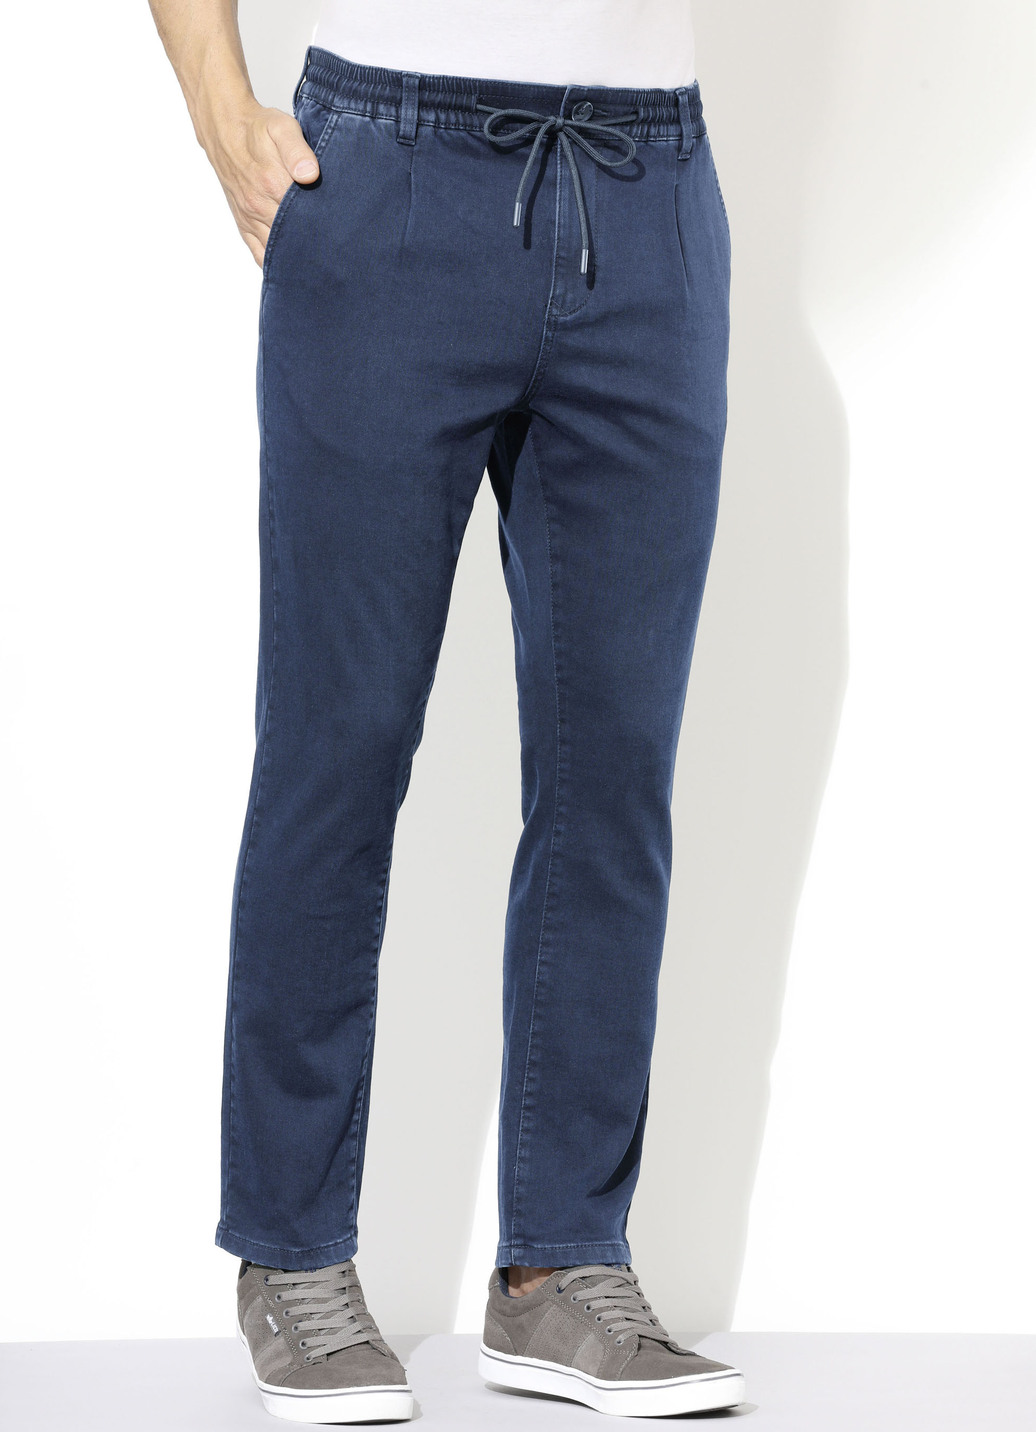 Superstretch-Jeans in 3 Farben, Jeansblau, Größe 27 von DANNECKER